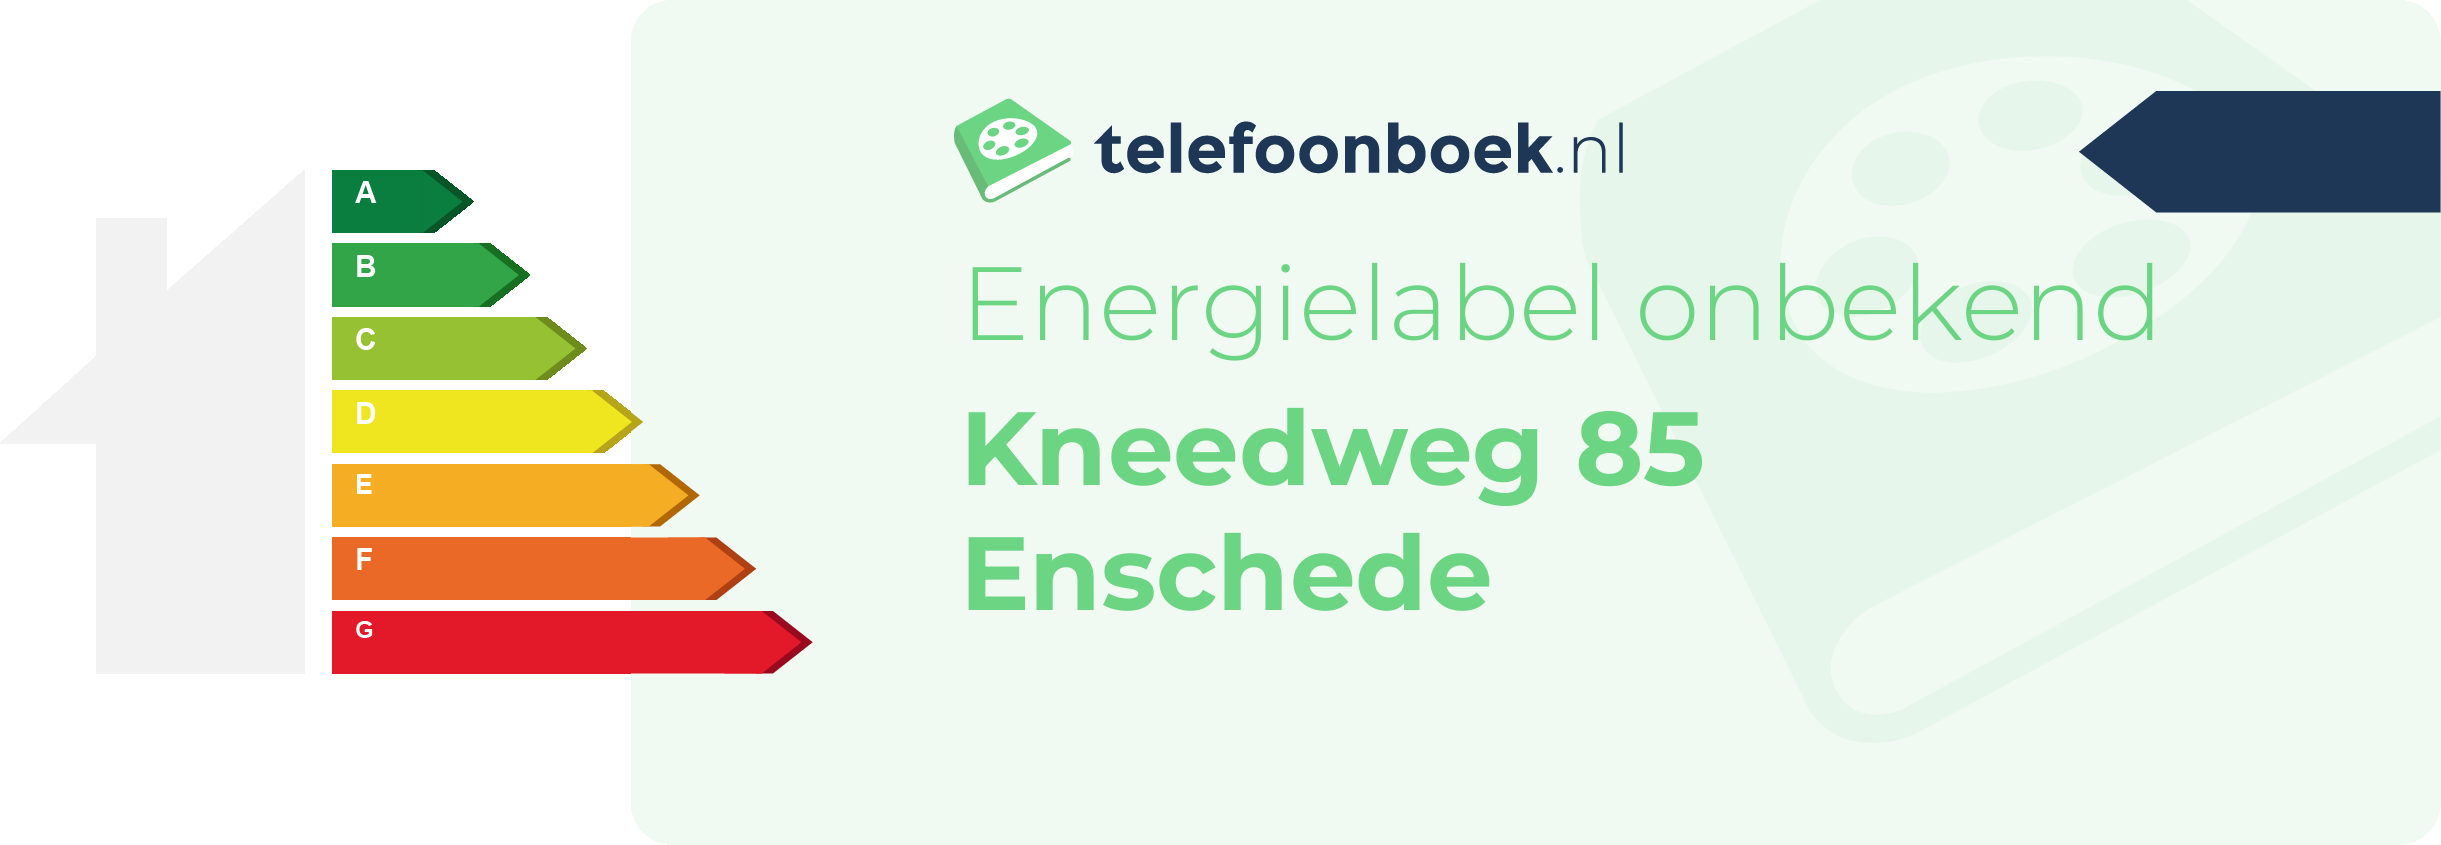 Energielabel Kneedweg 85 Enschede